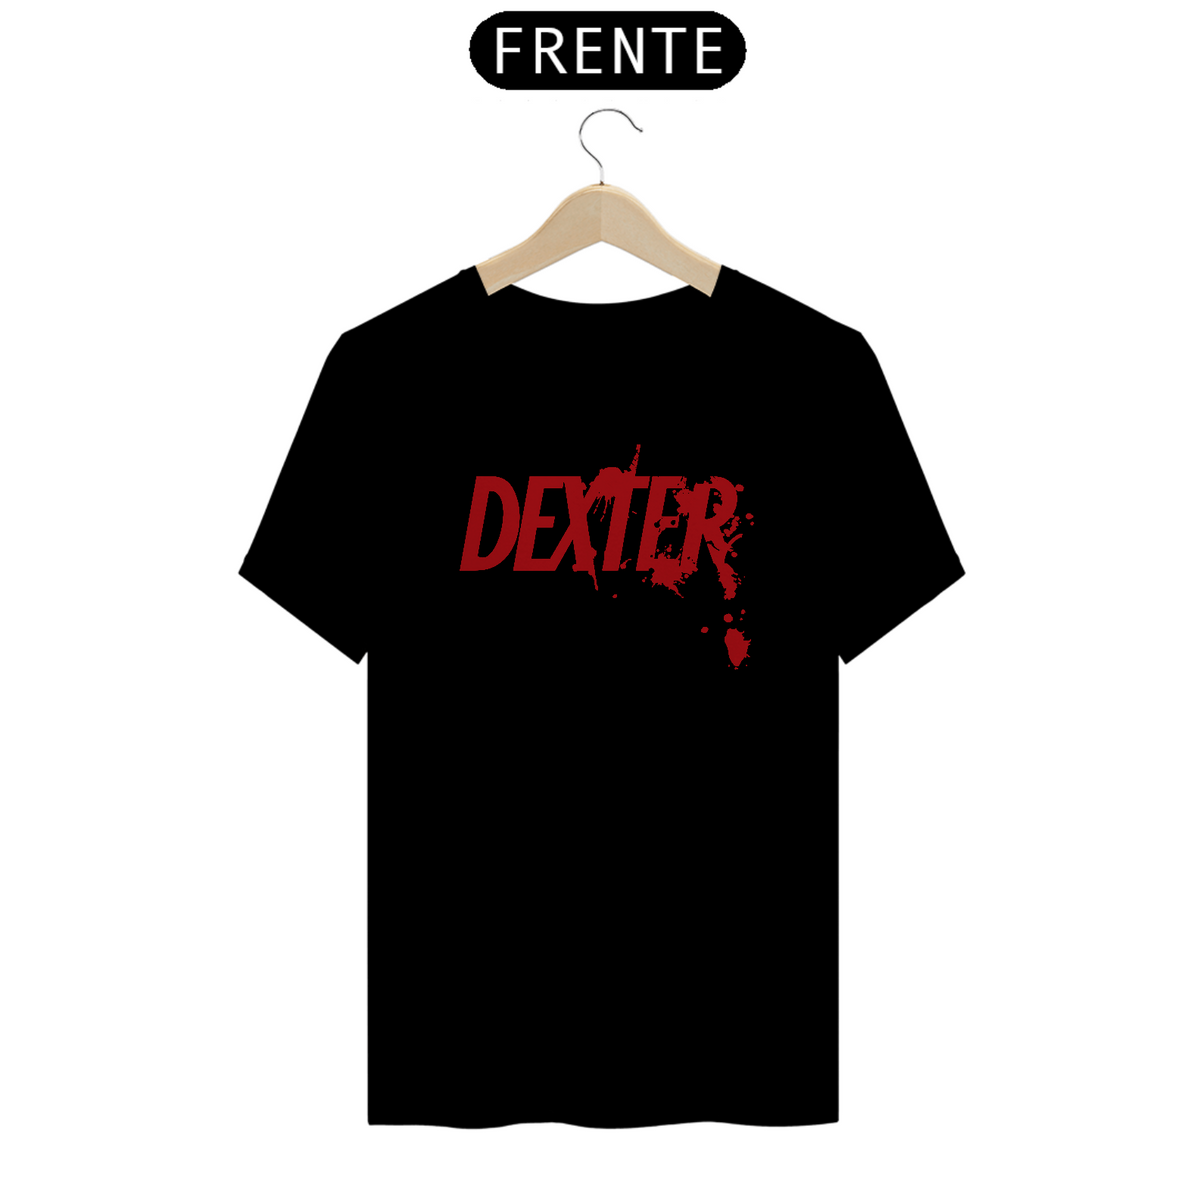 Nome do produto: Dexter